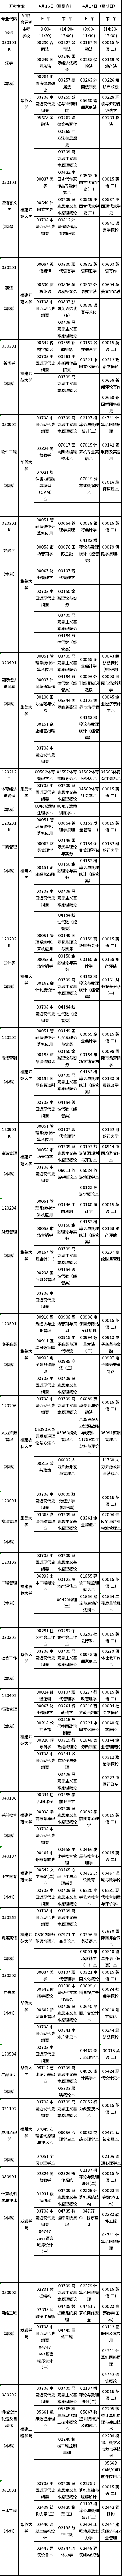 福建省2022年4月高等教育自学考试开考专业理论课程考试时间安排表